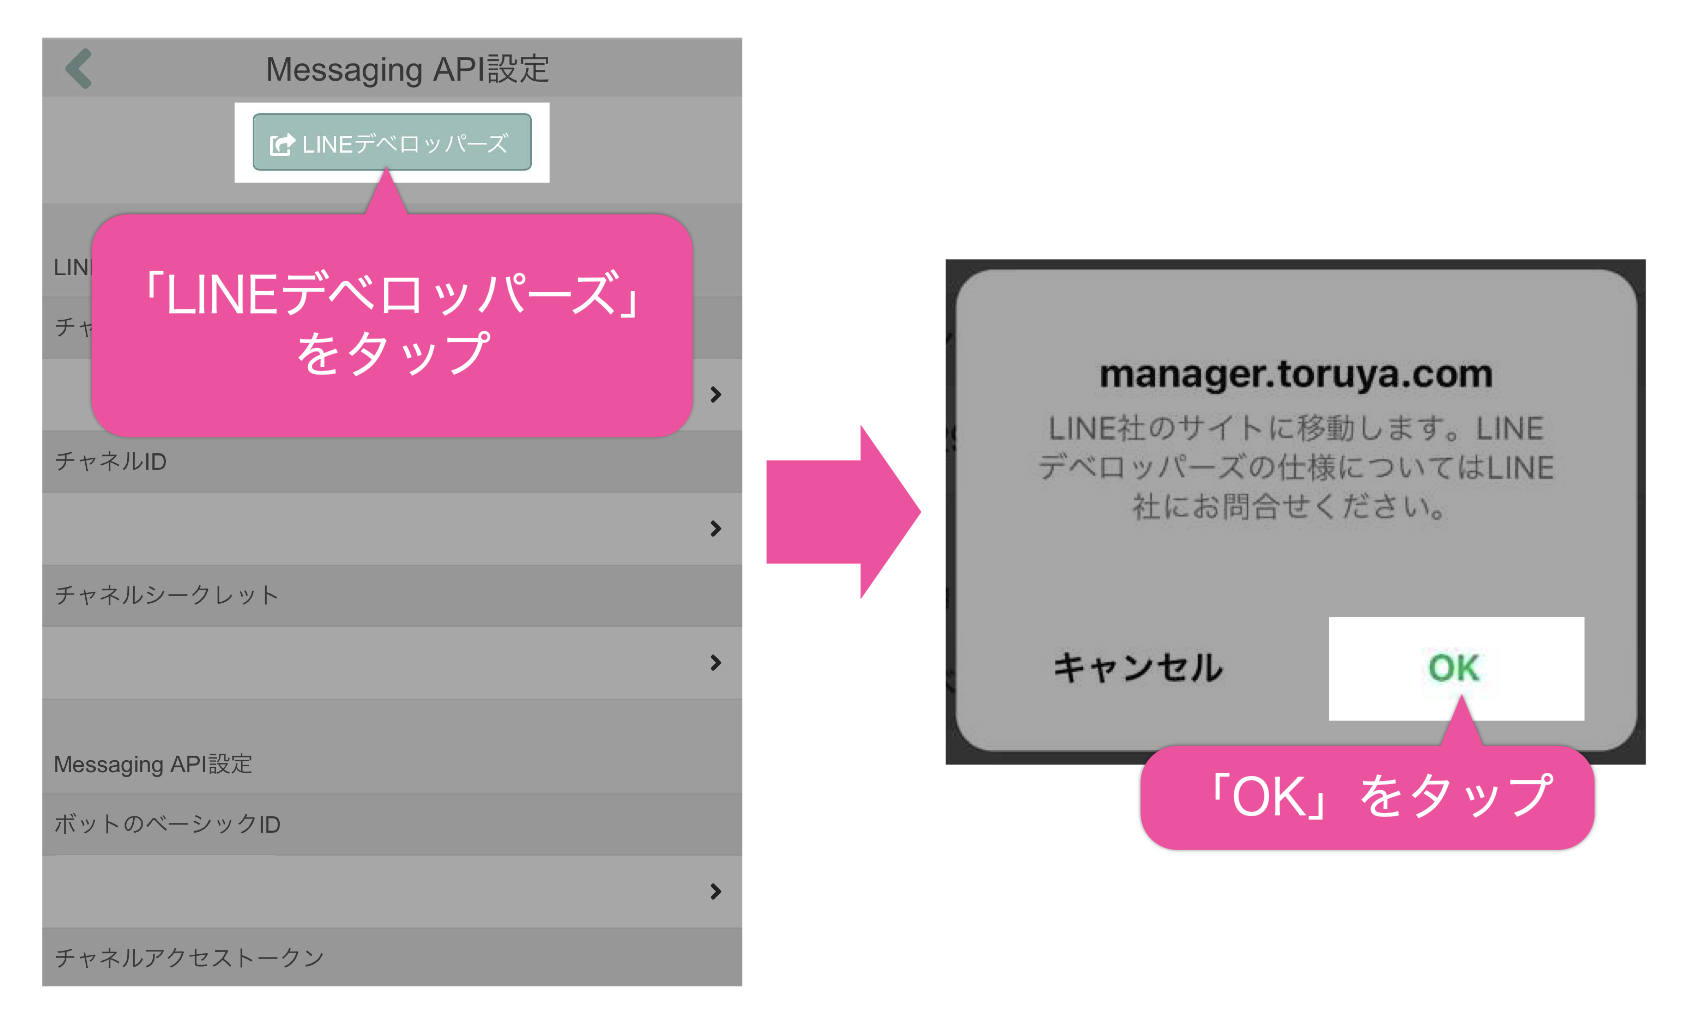 Messaging API設定画面で「LINEデベロッパーズ」ボタンをタップすると、LINE社のサイトに移動するので「OK」をタップ